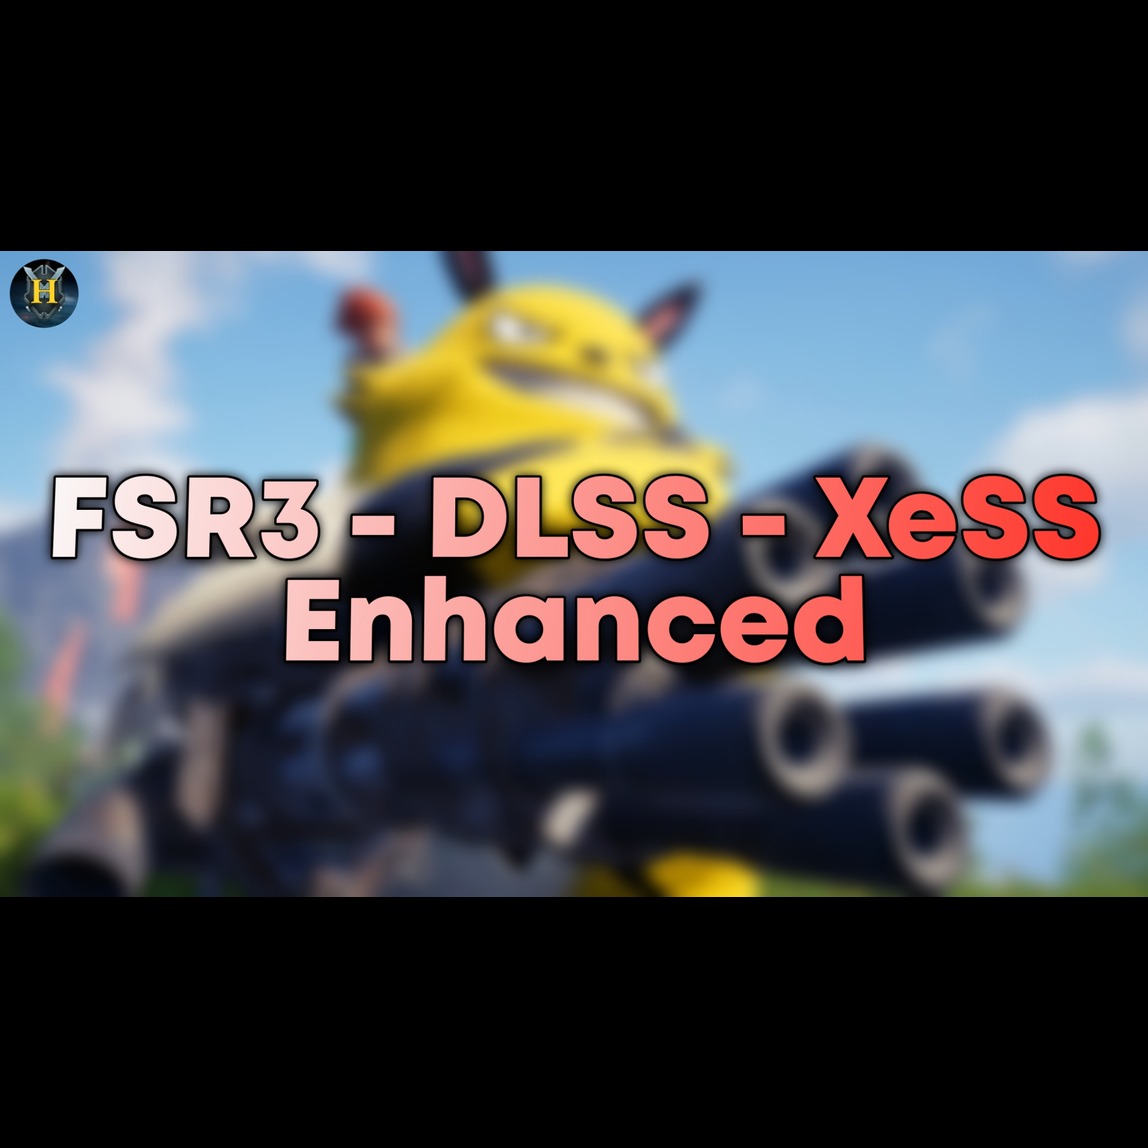 FSR3 DLSS XeSS Enhanced project avatar